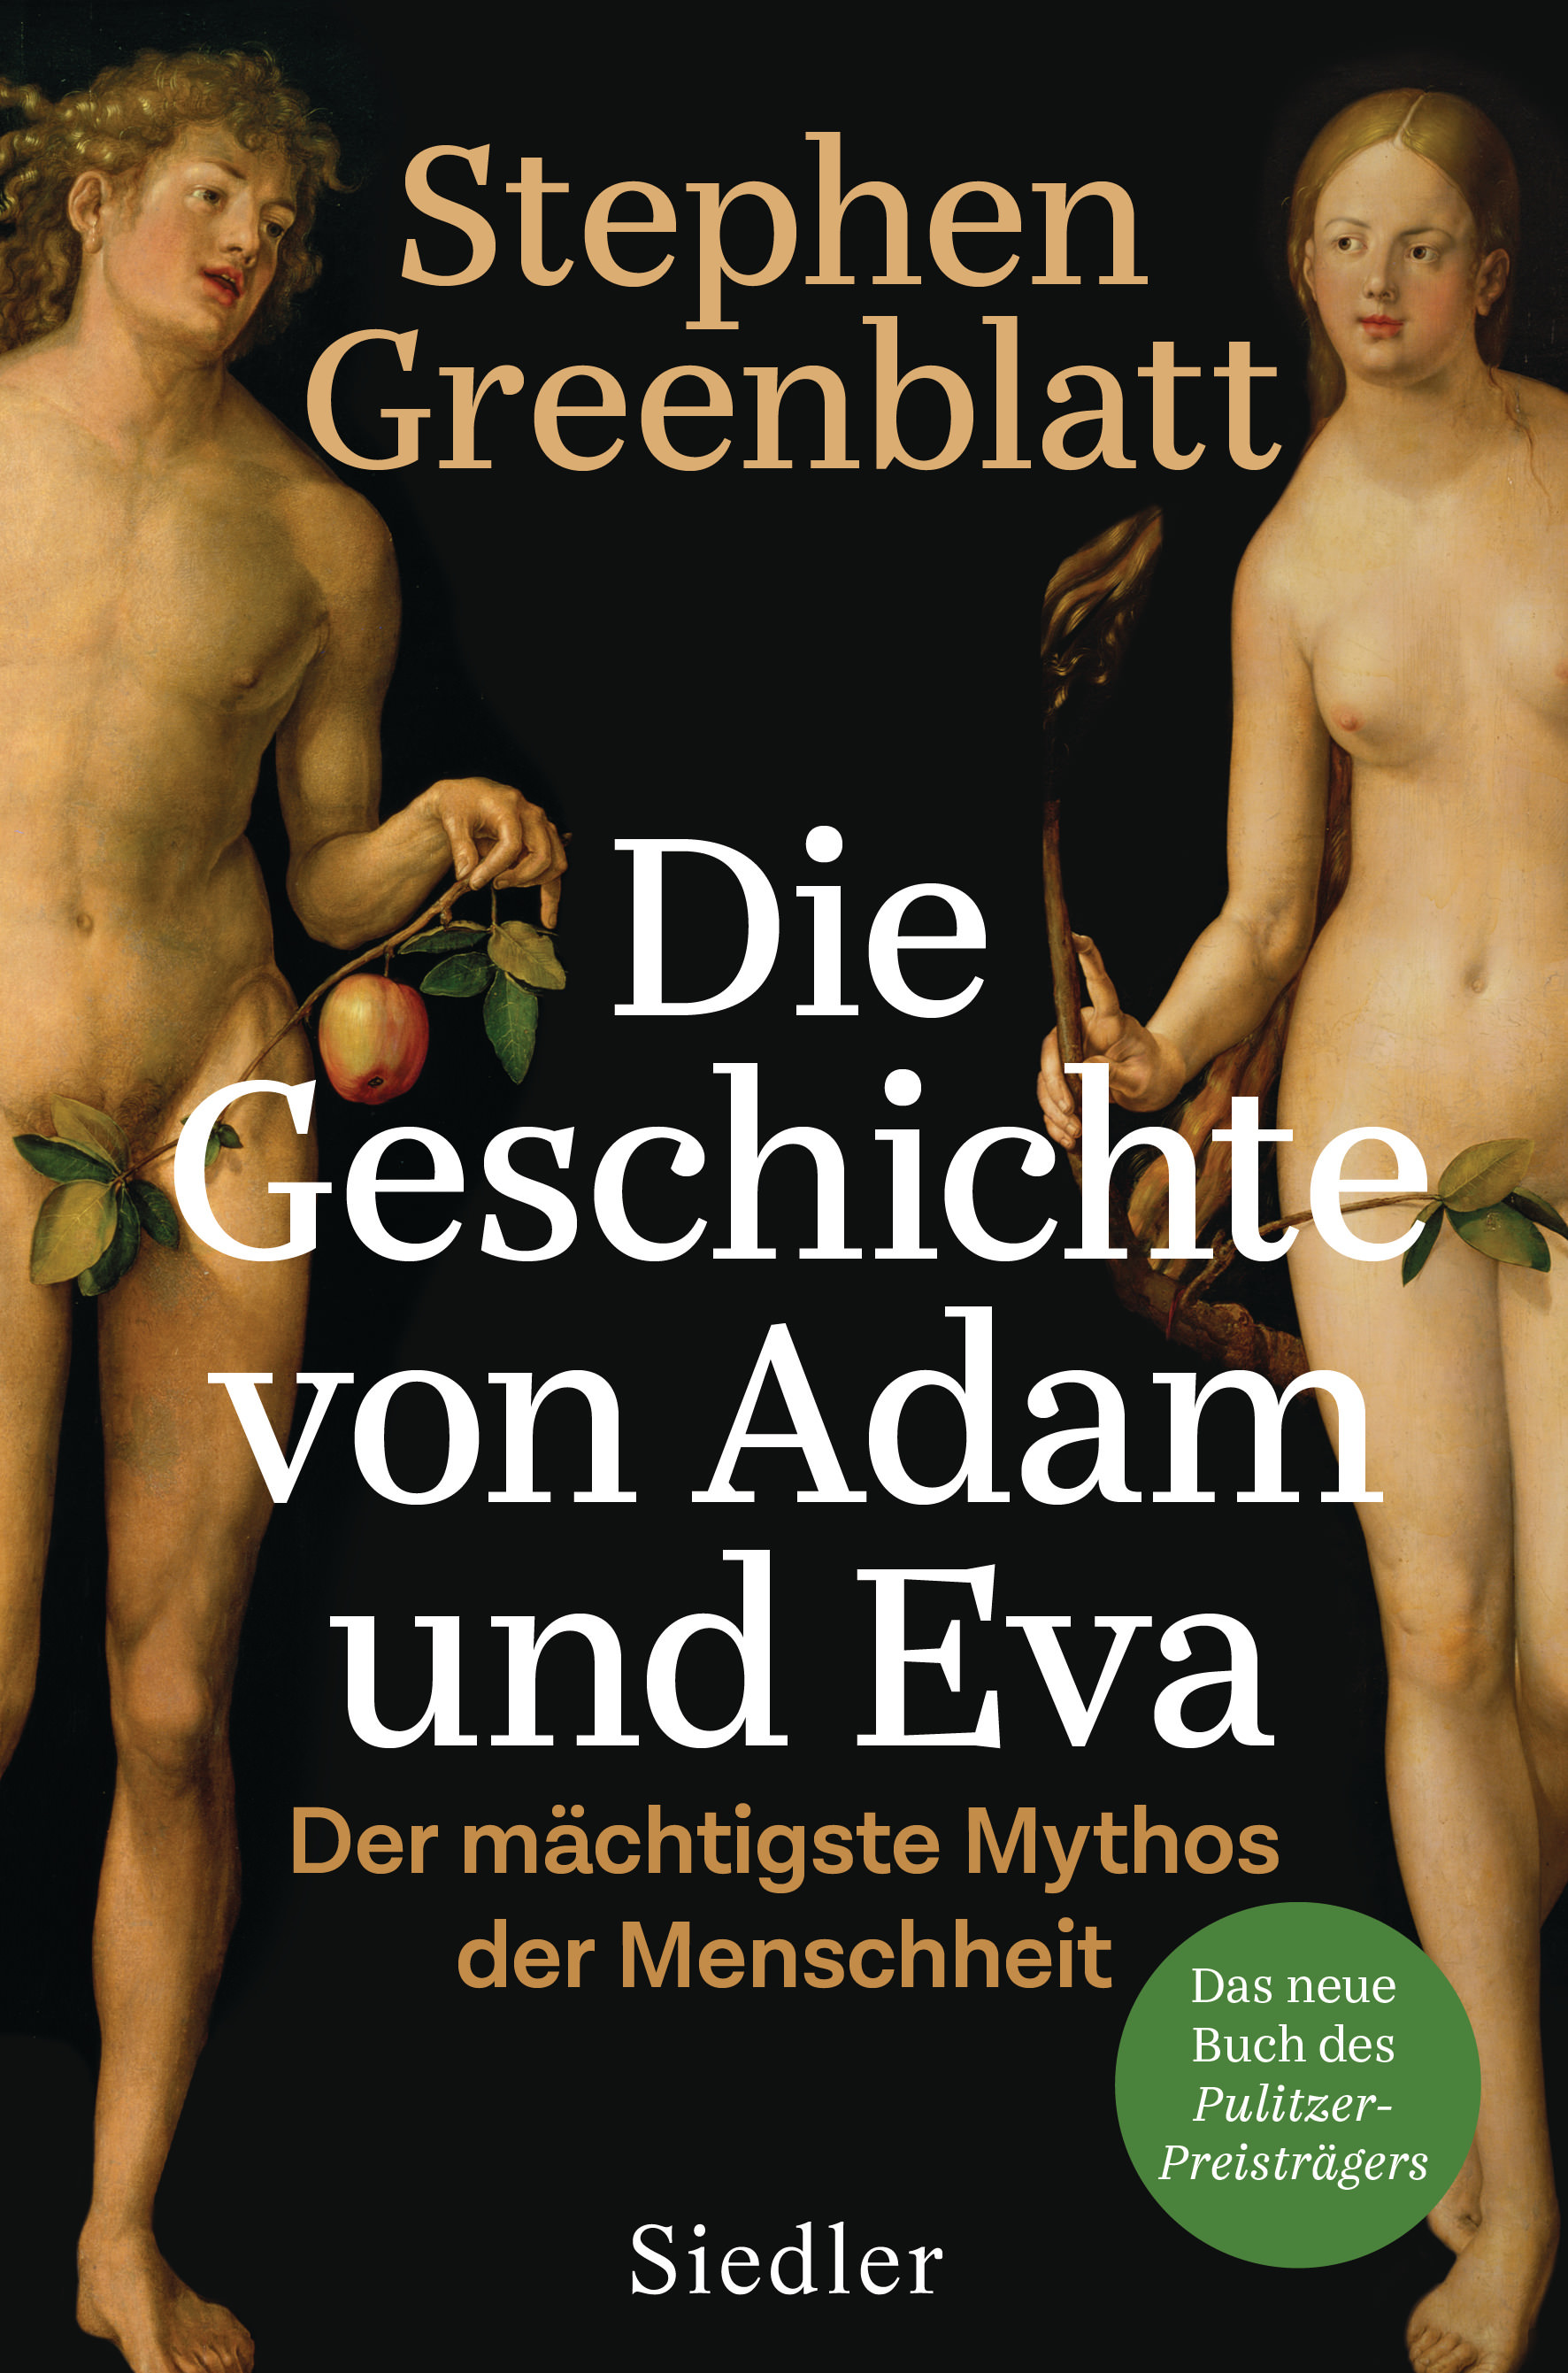 Stephen Greenblatt: Die Geschichte von Adam und Eva